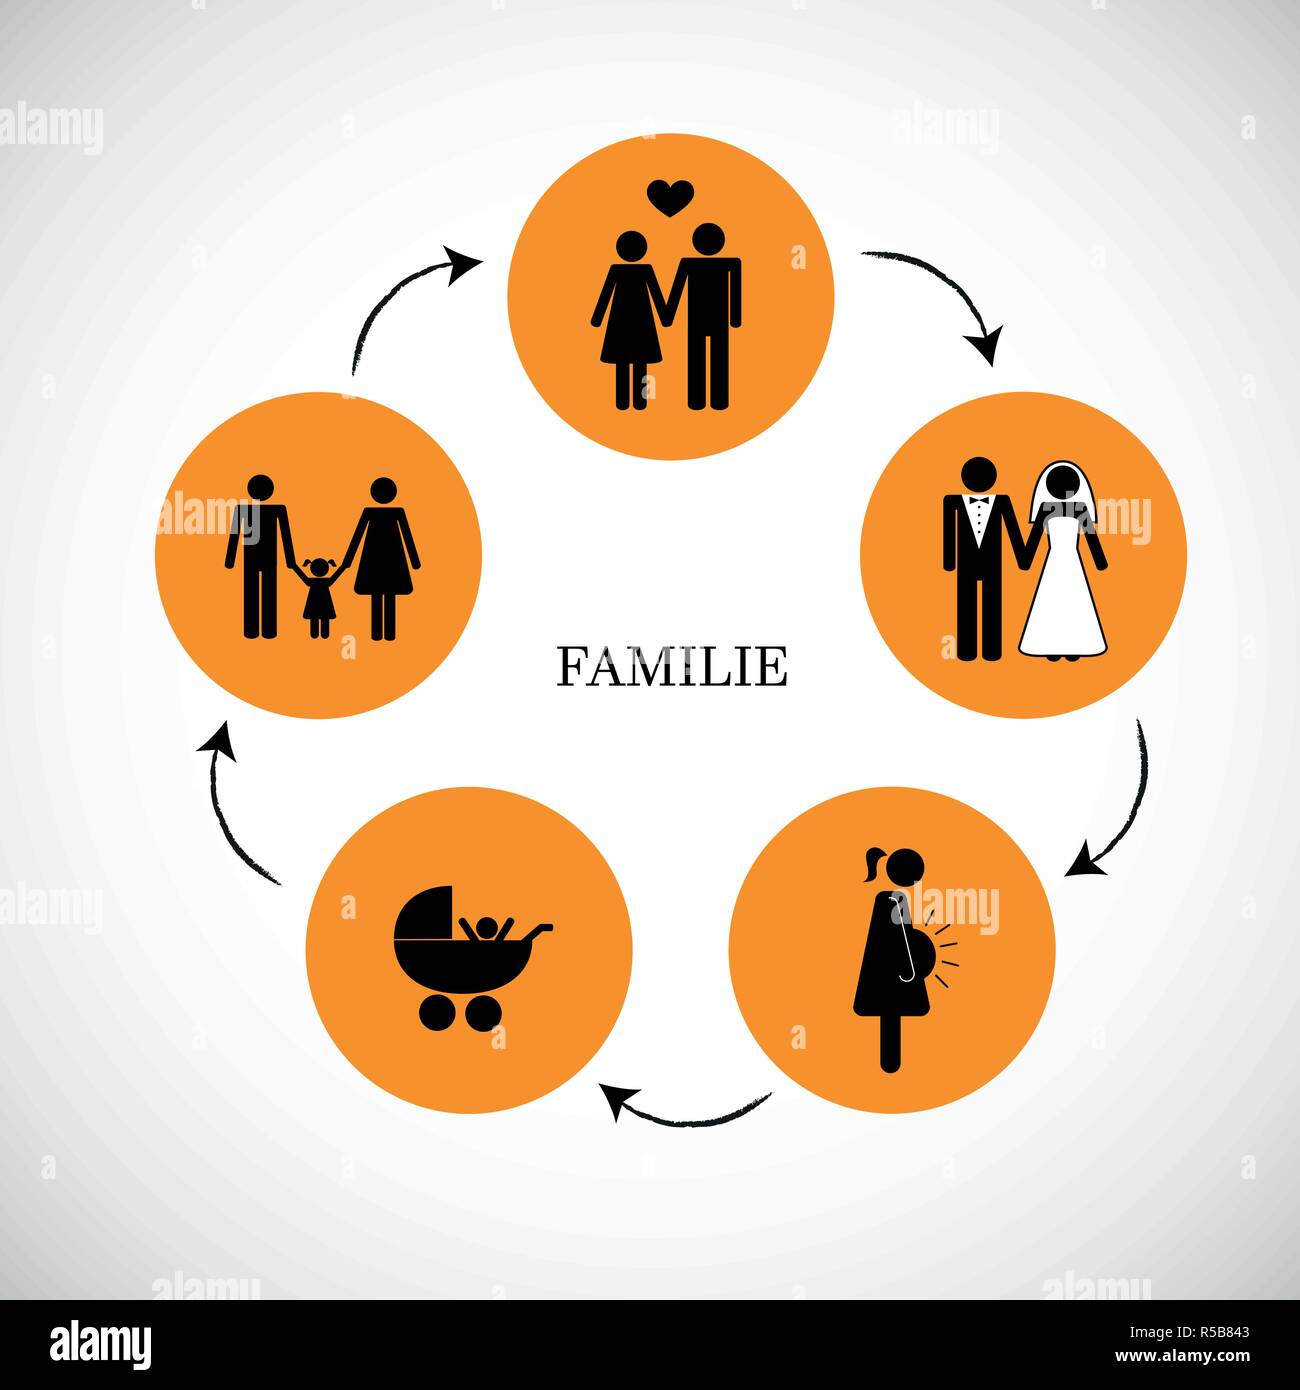 Menschen leben Familie Verkehr Konzept Piktogramm Vektor-illustration EPS 10. Stock Vektor